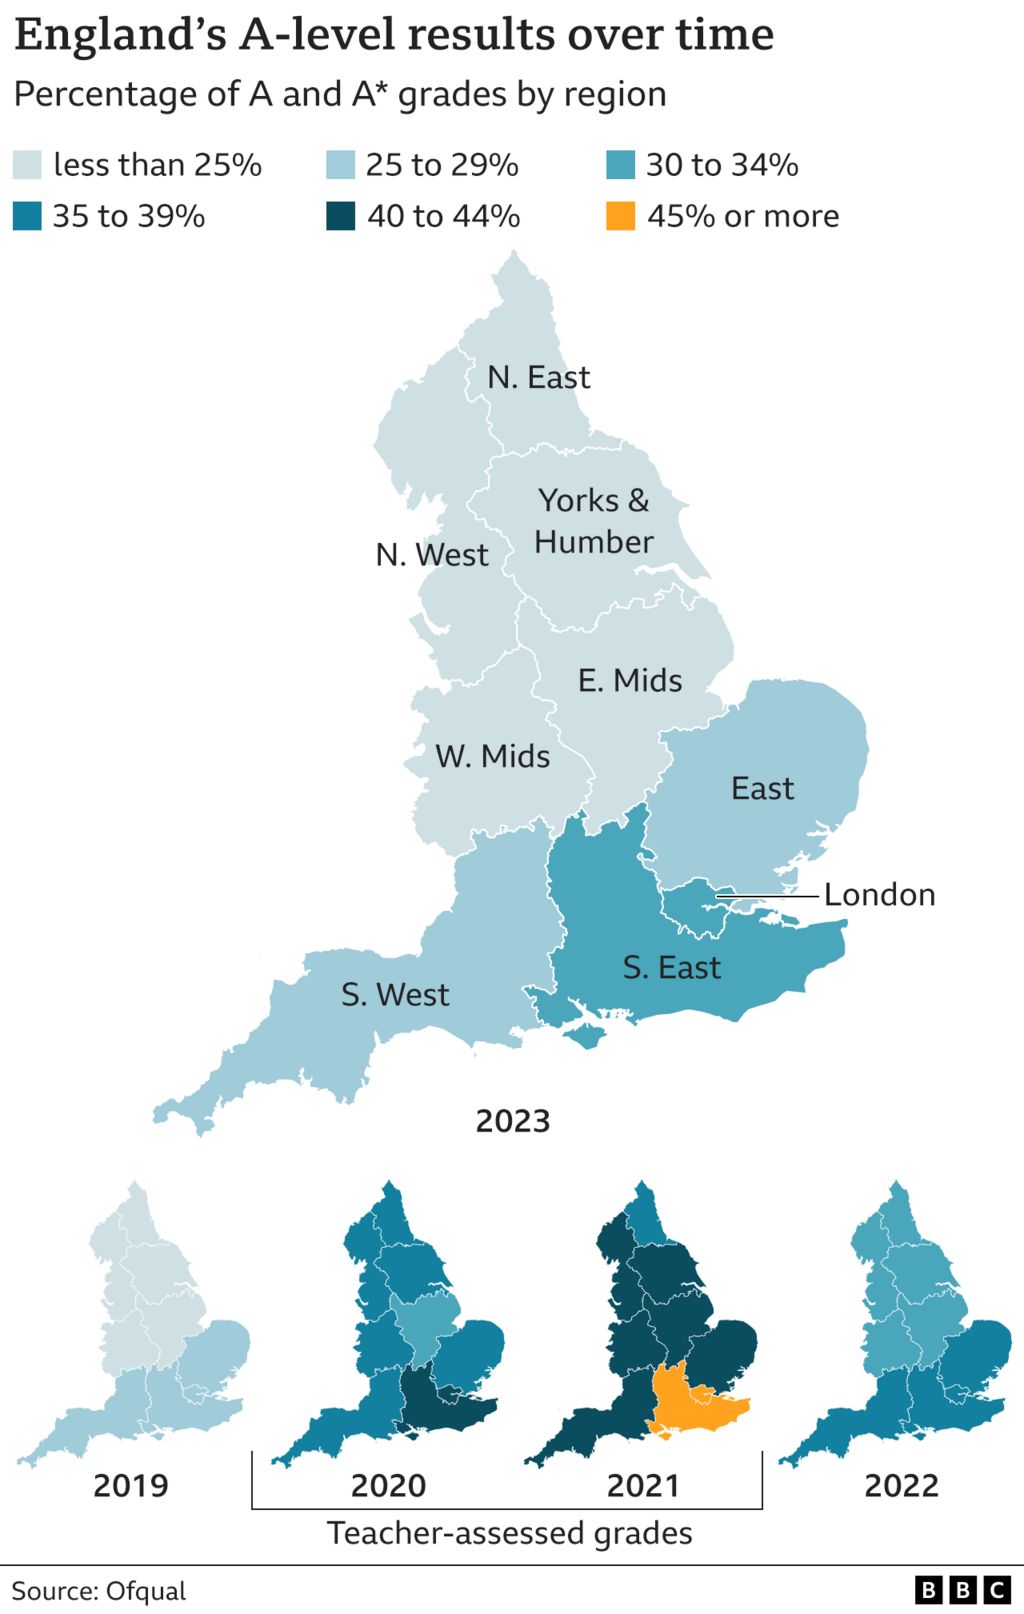 Диаграмма, показывающая региональные различия в доле высших оценок A-level в Англии